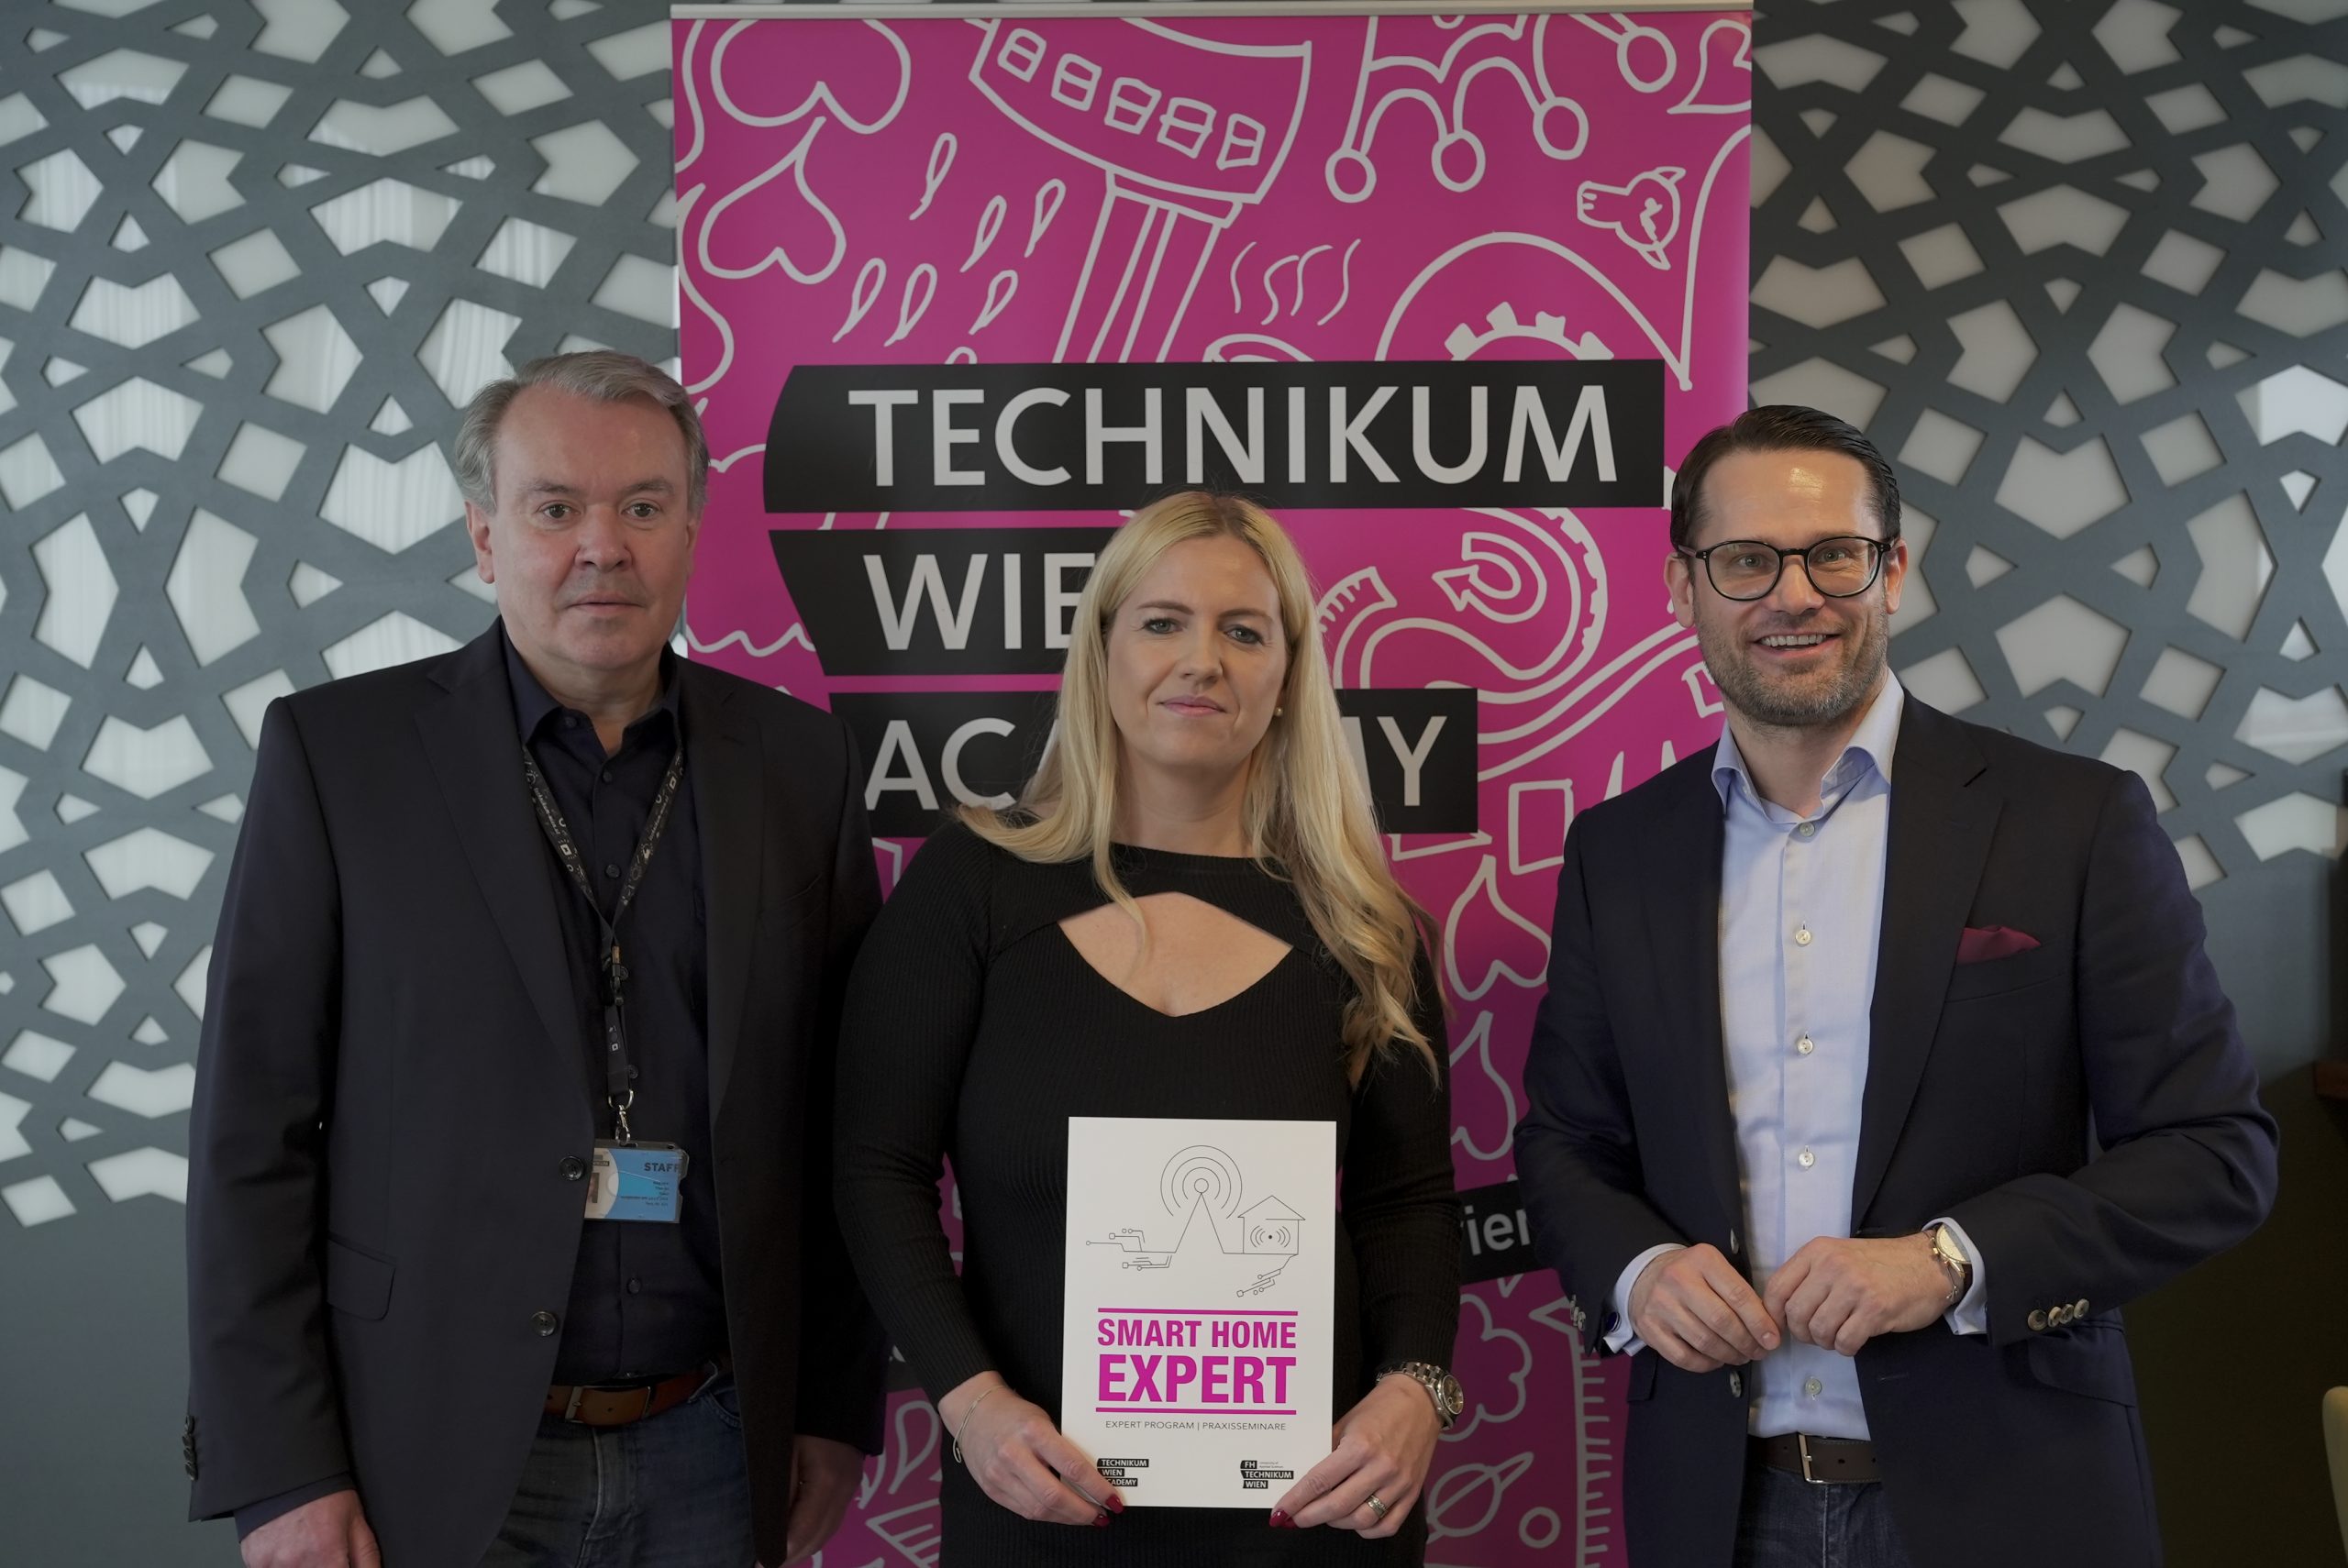 Smart Home Expert: Neue Praxisseminare an der Technikum Wien Academy